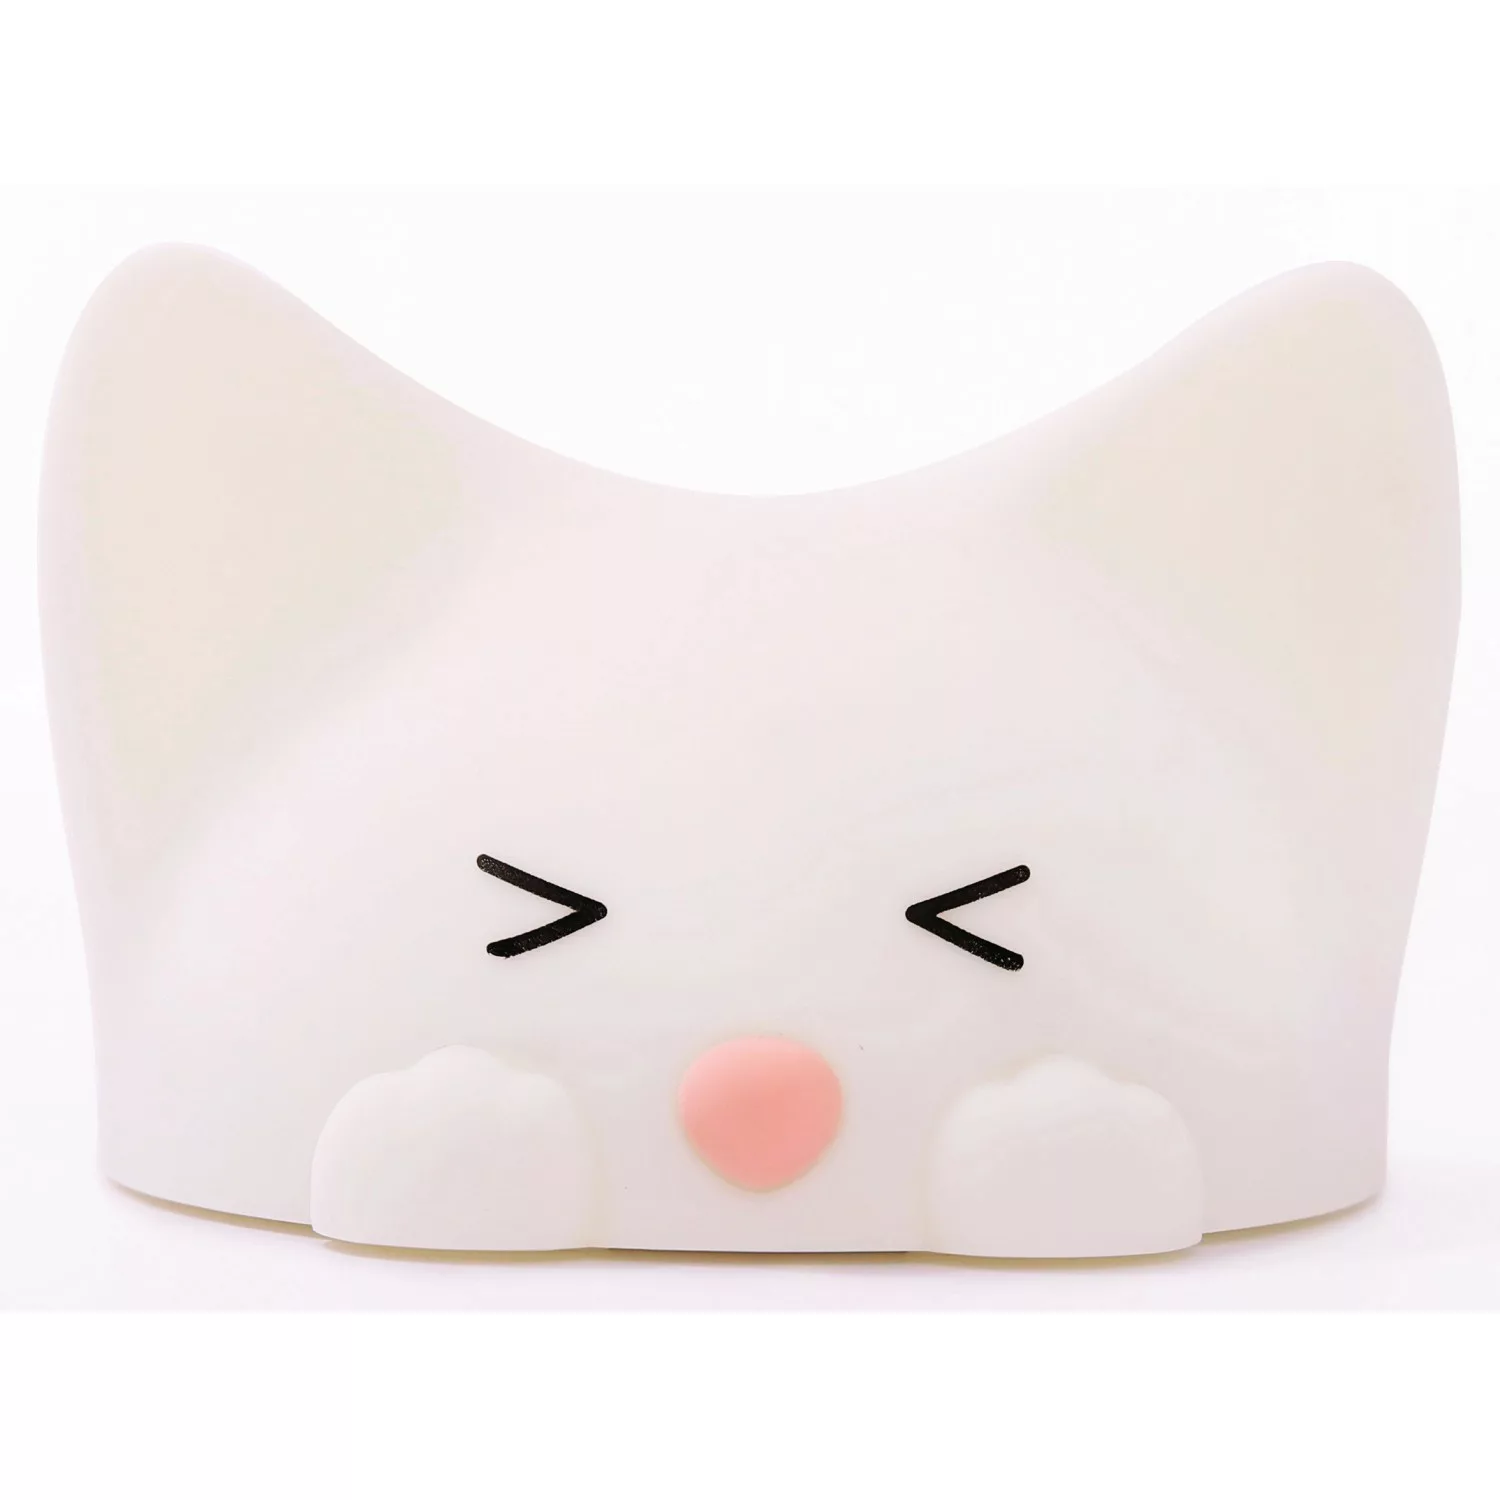 Akku-LED-Nachtlicht Catty Cat, 7 Farben + Sound günstig online kaufen